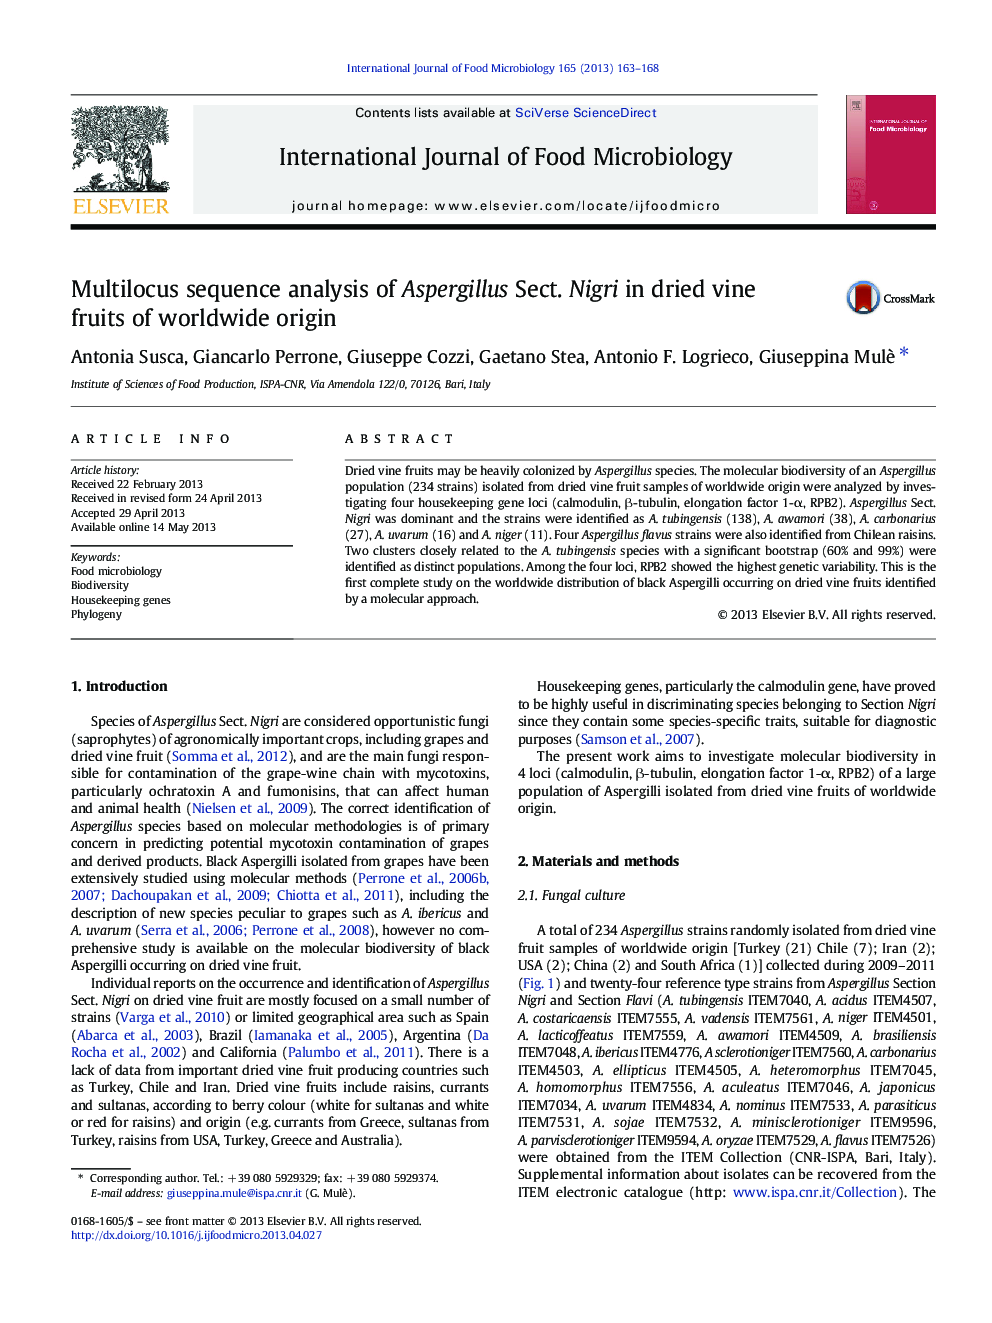 Multilocus sequence analysis of Aspergillus Sect. Nigri in dried vine fruits of worldwide origin